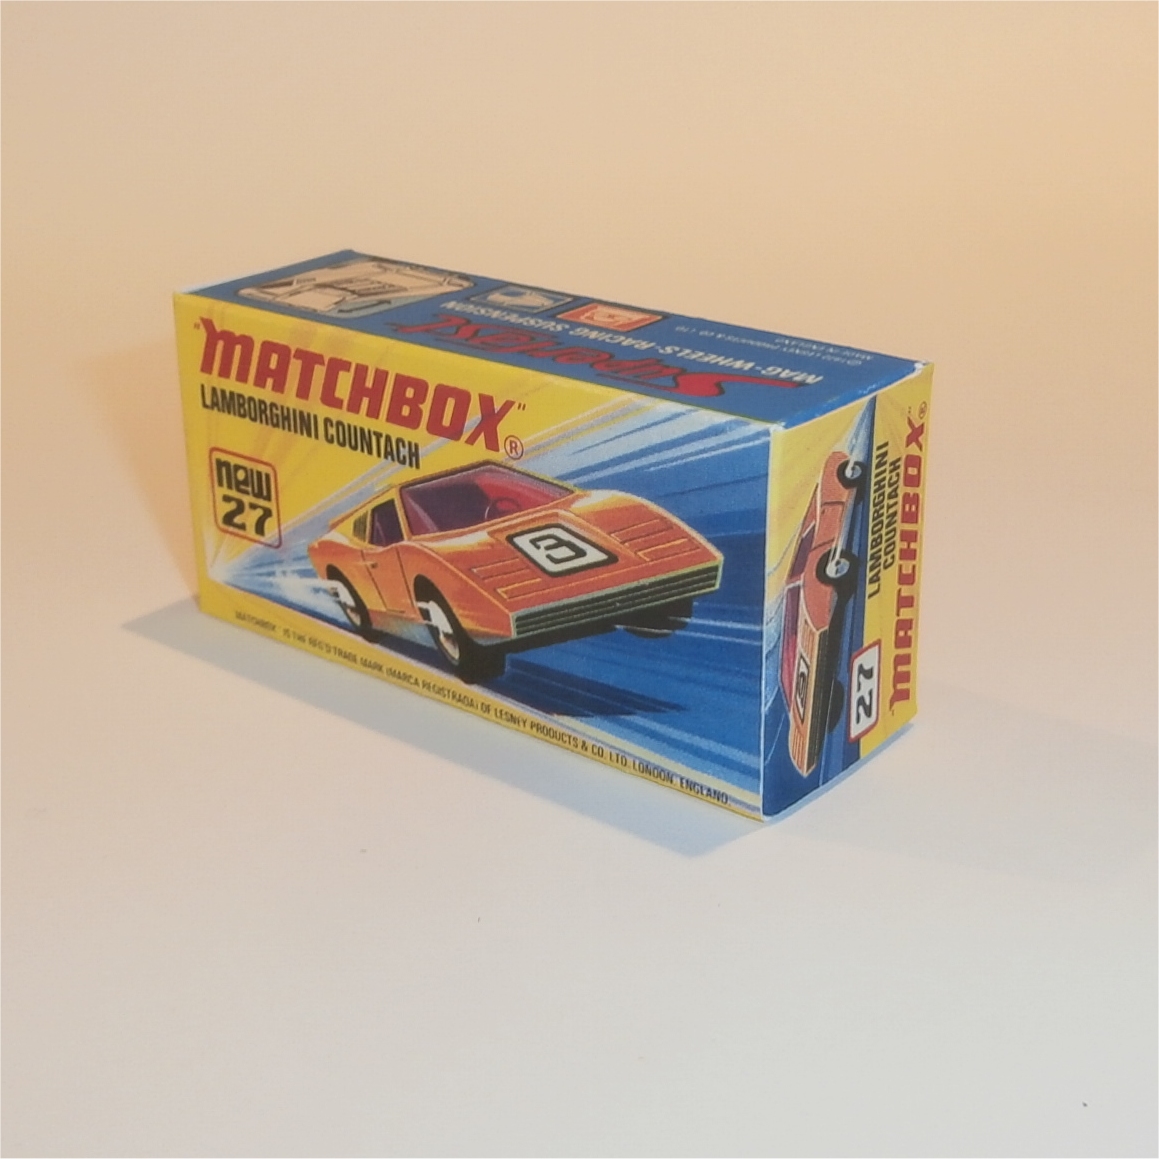 Matchbox Lesney 35 a Horse Box empty Repro B style Box